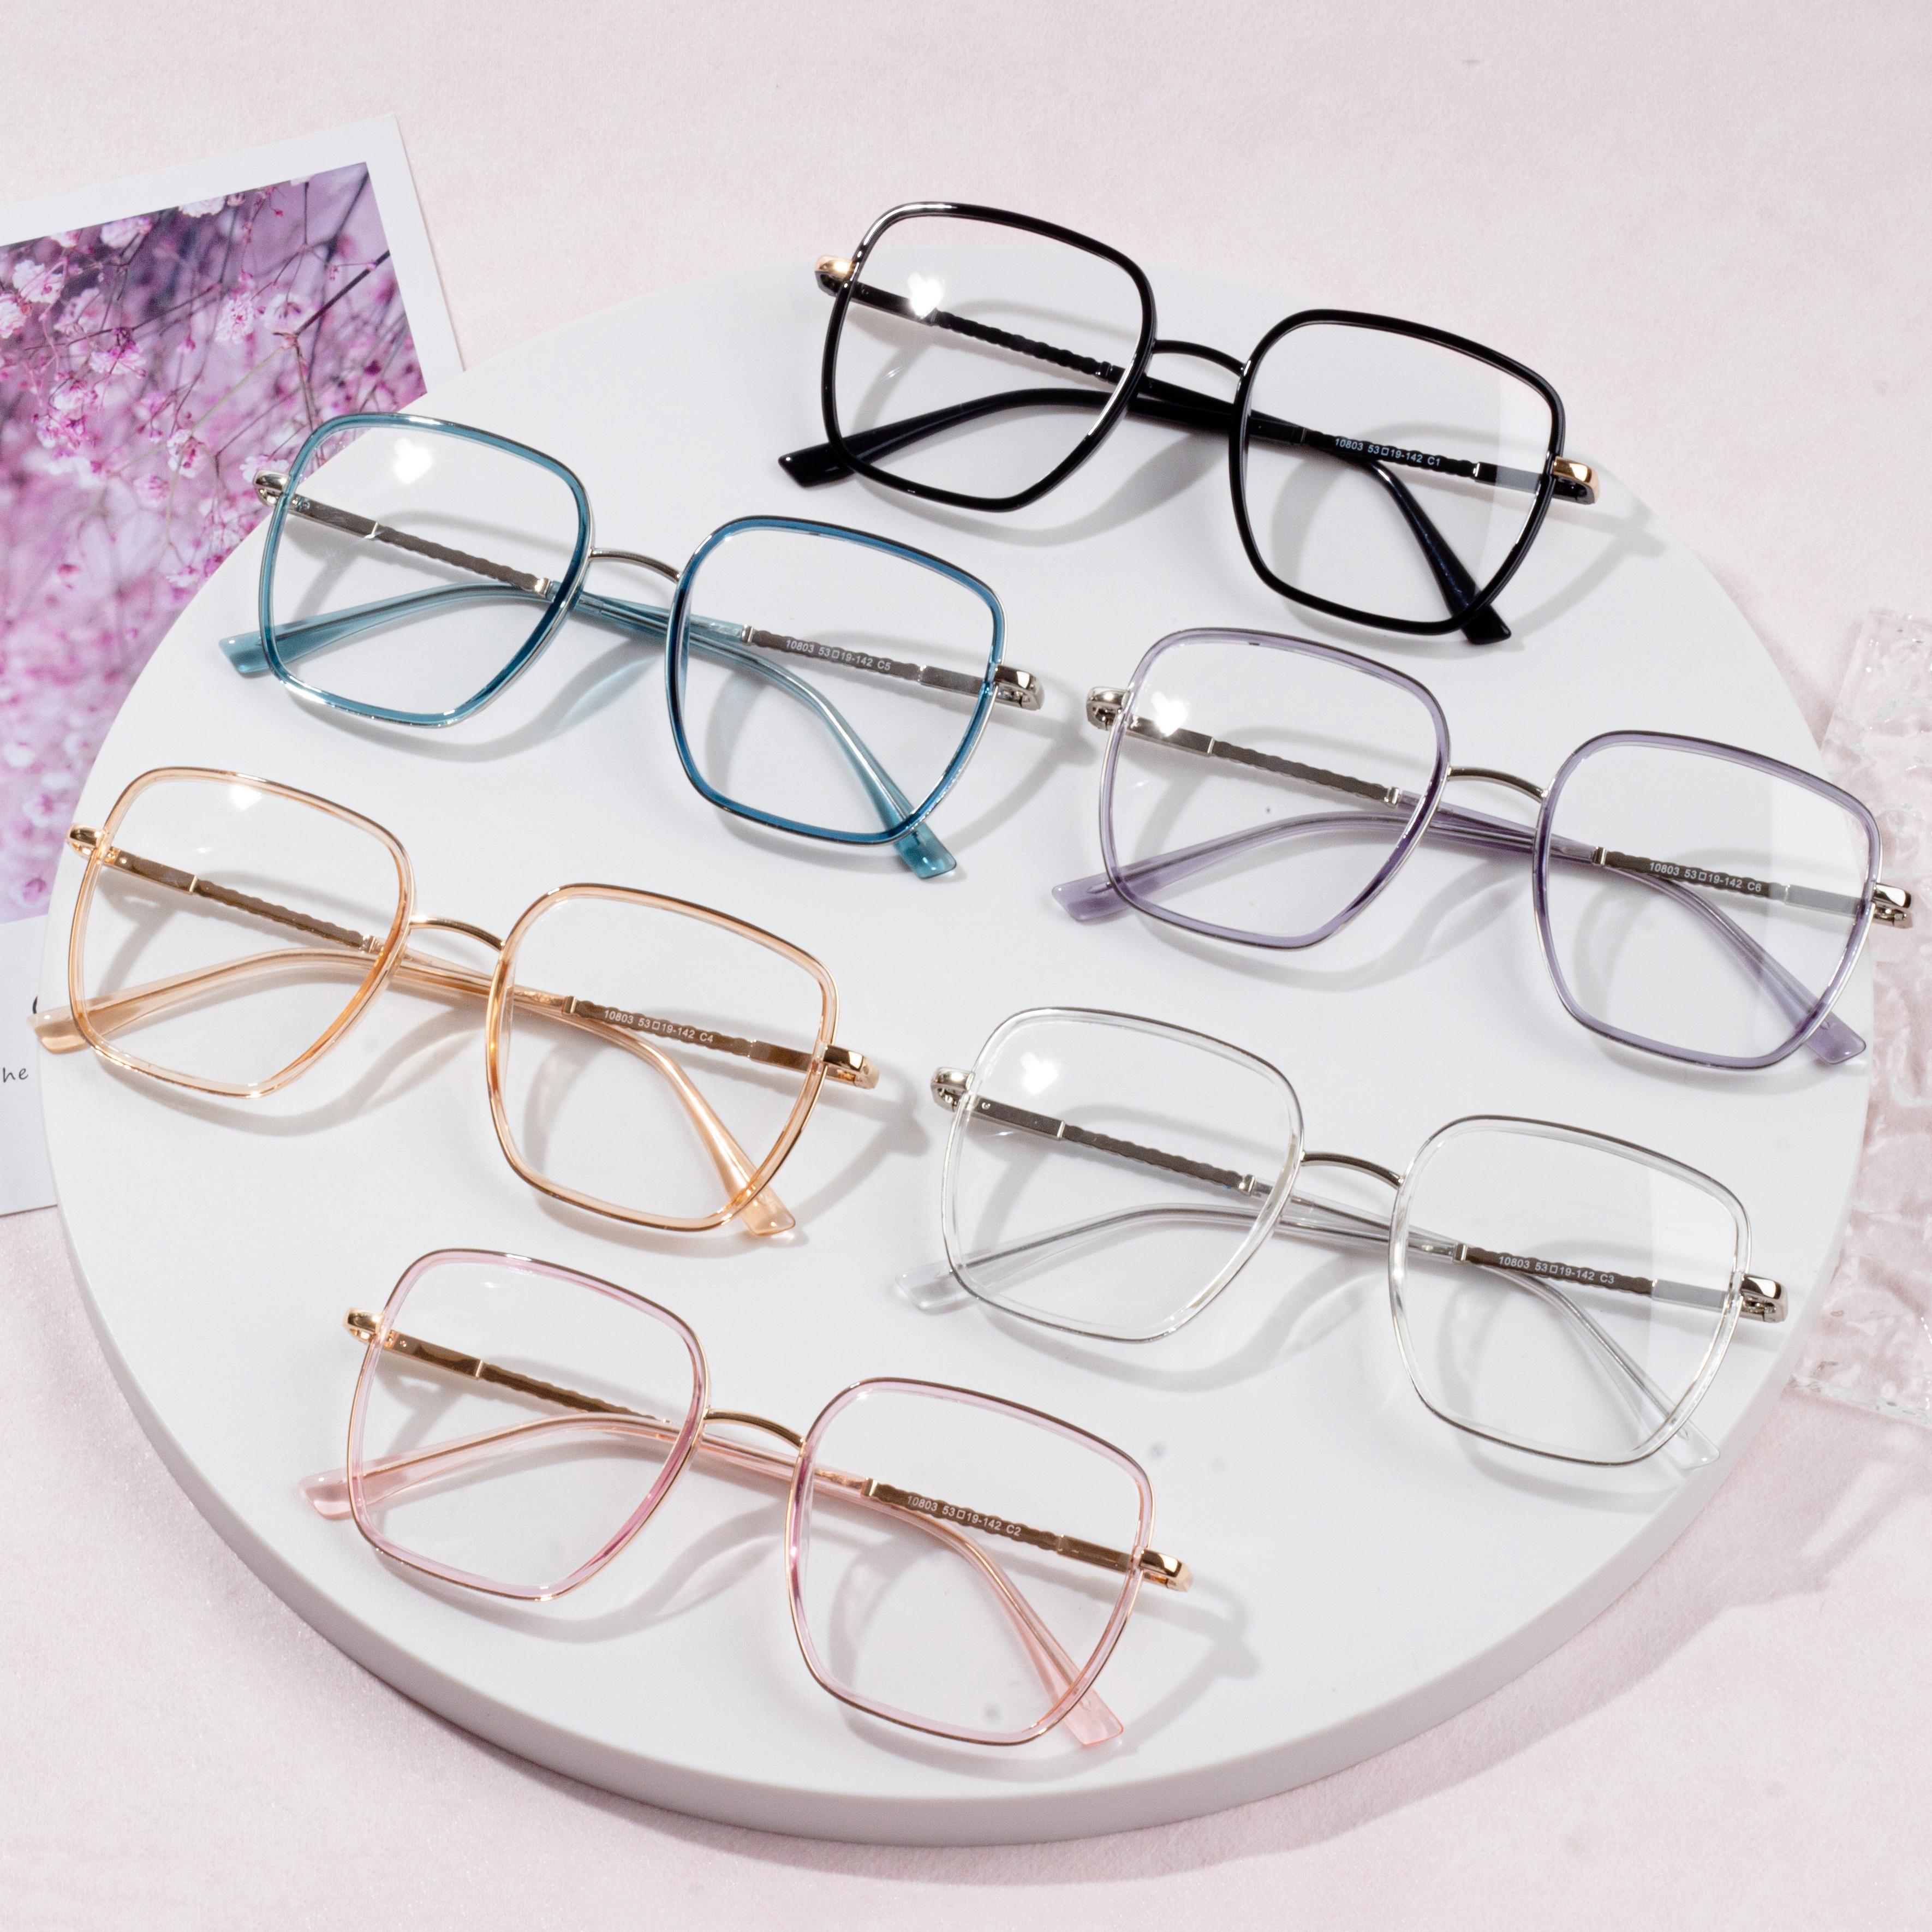 Нова модна оправа для окулярів, що блокує синє світло